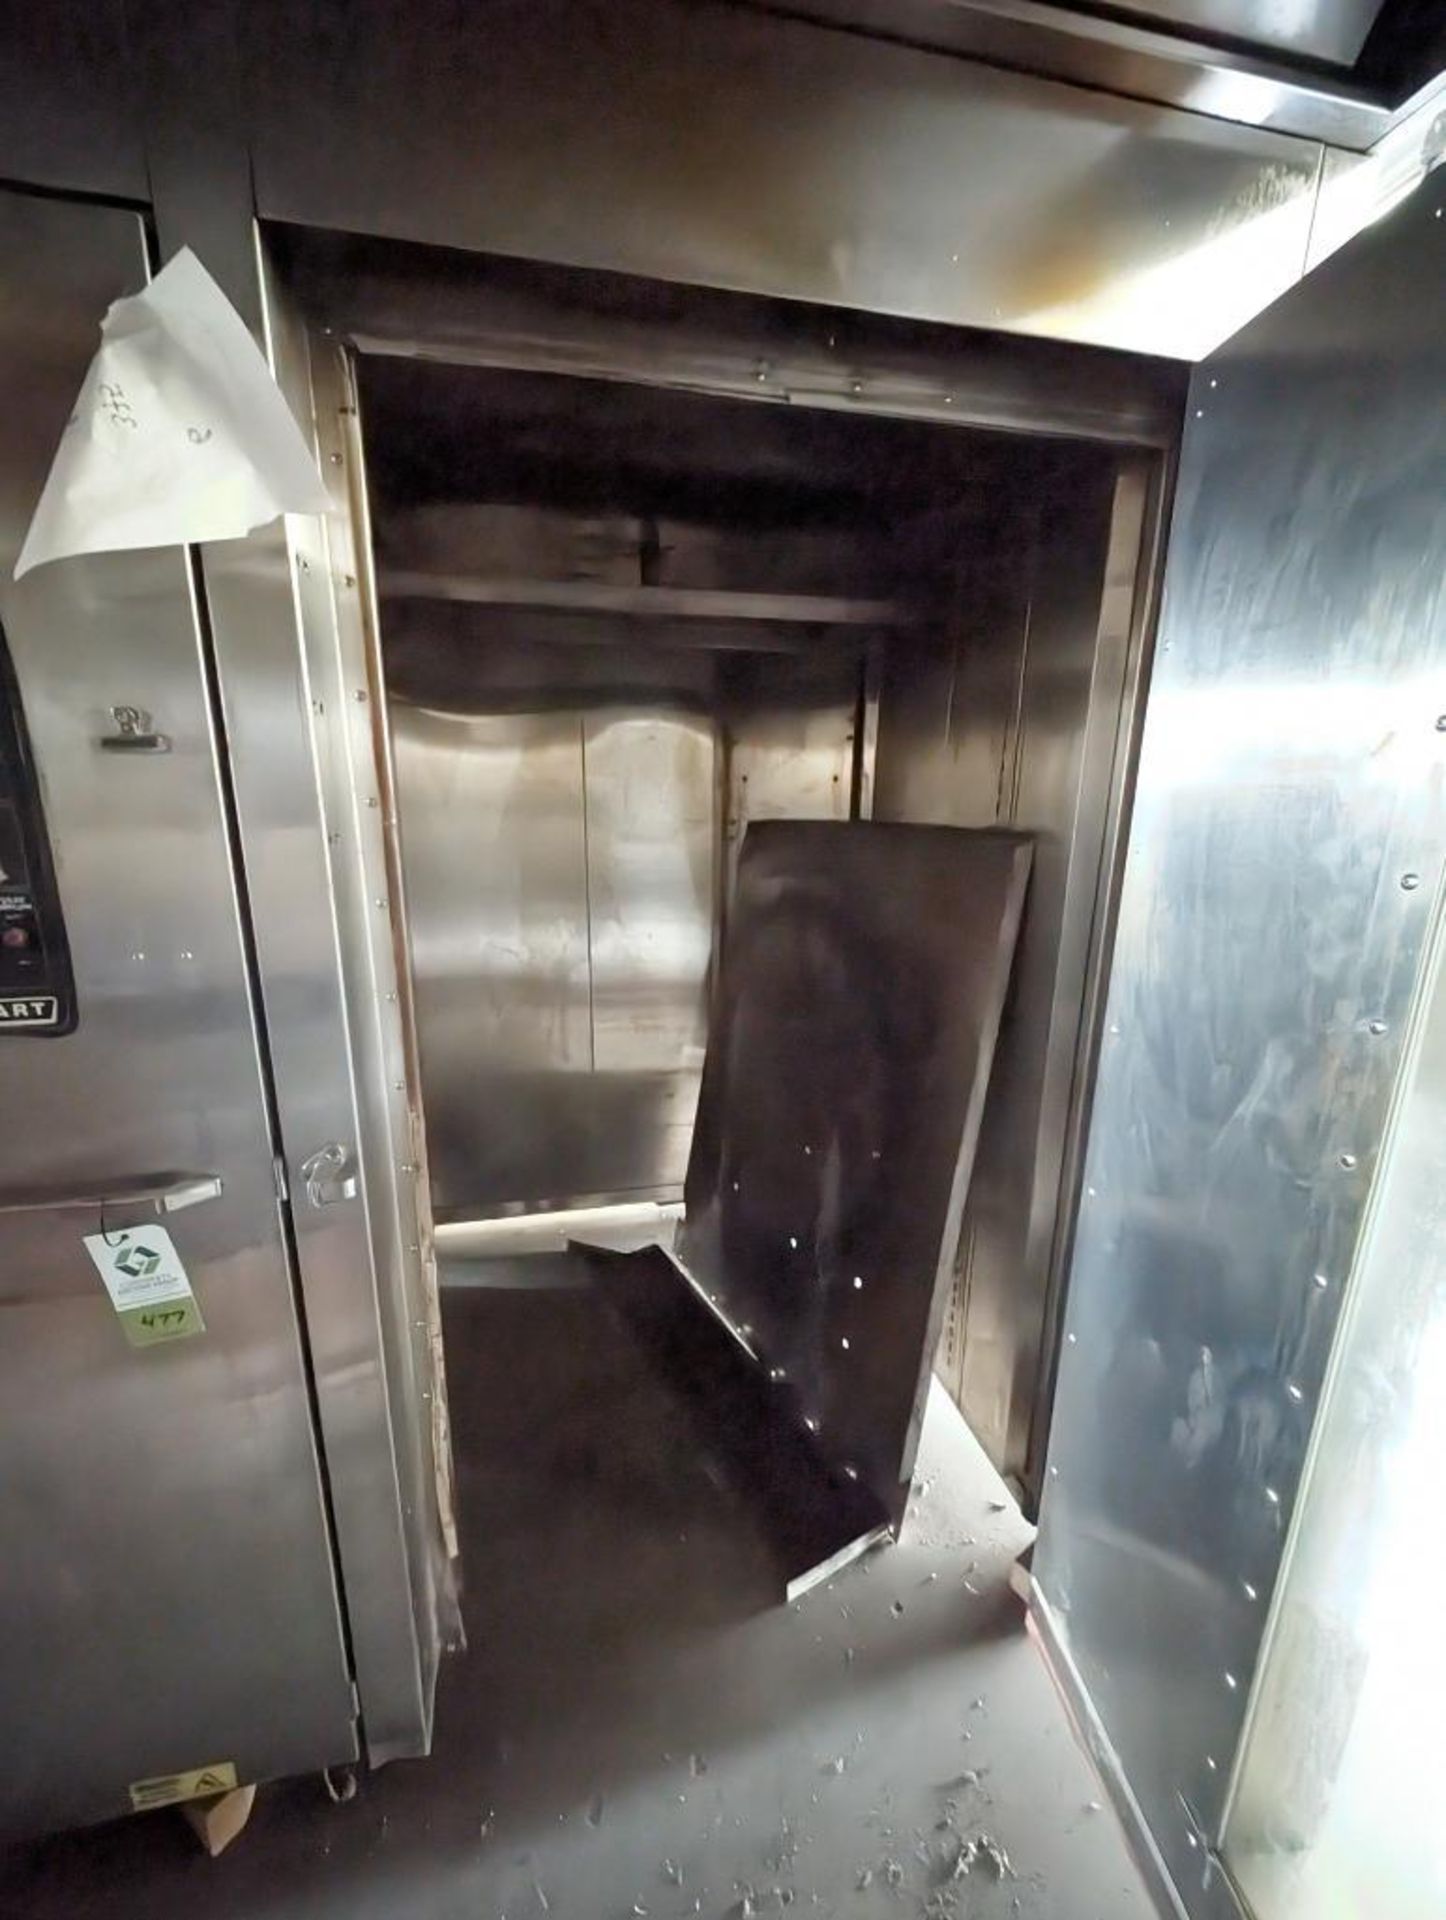 Hobart double rack oven - Image 3 of 9